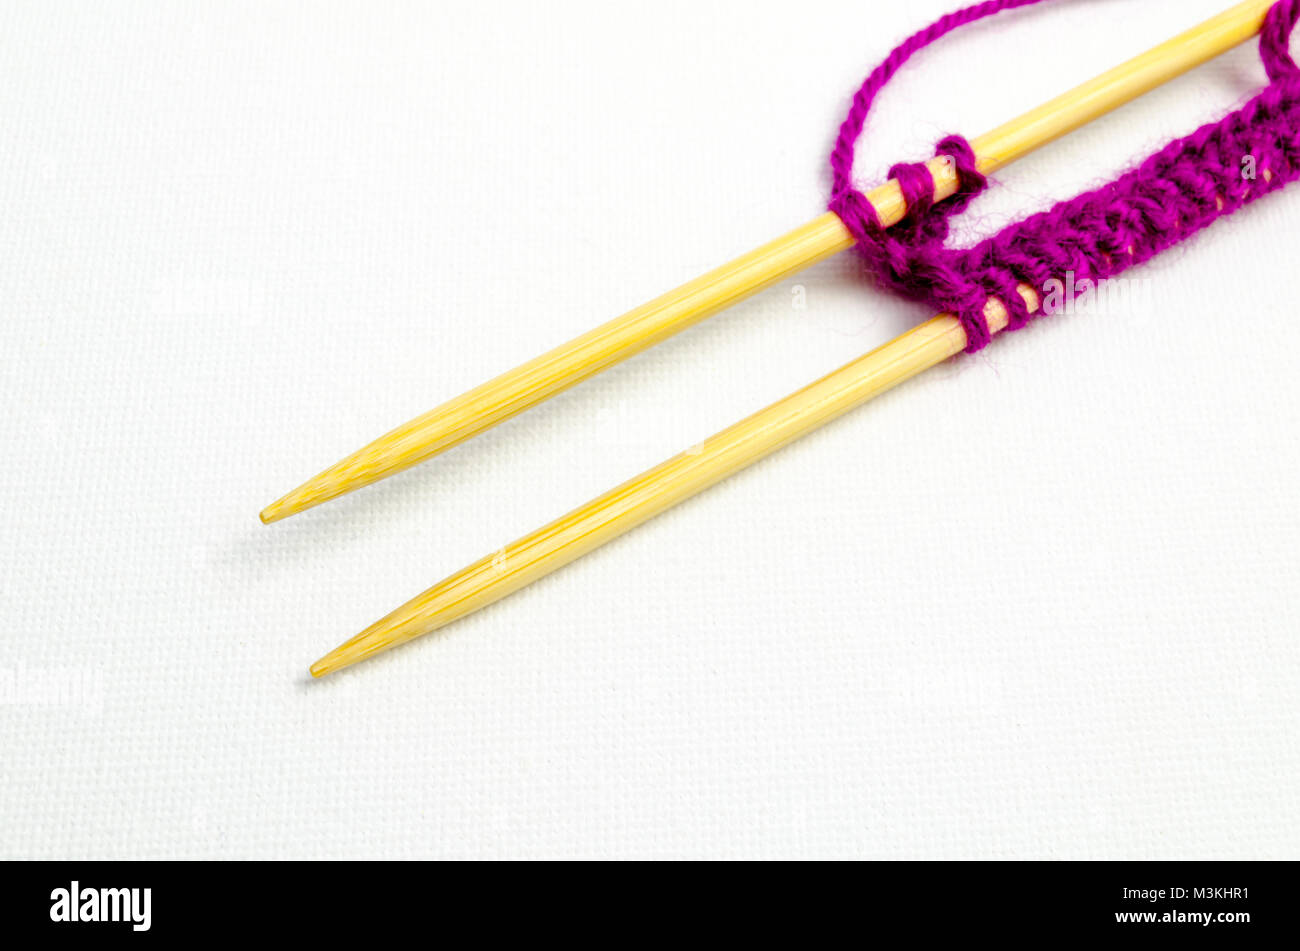 Un studio photo d'une paire d'aiguilles à tricoter en bois avec tricot violet Banque D'Images